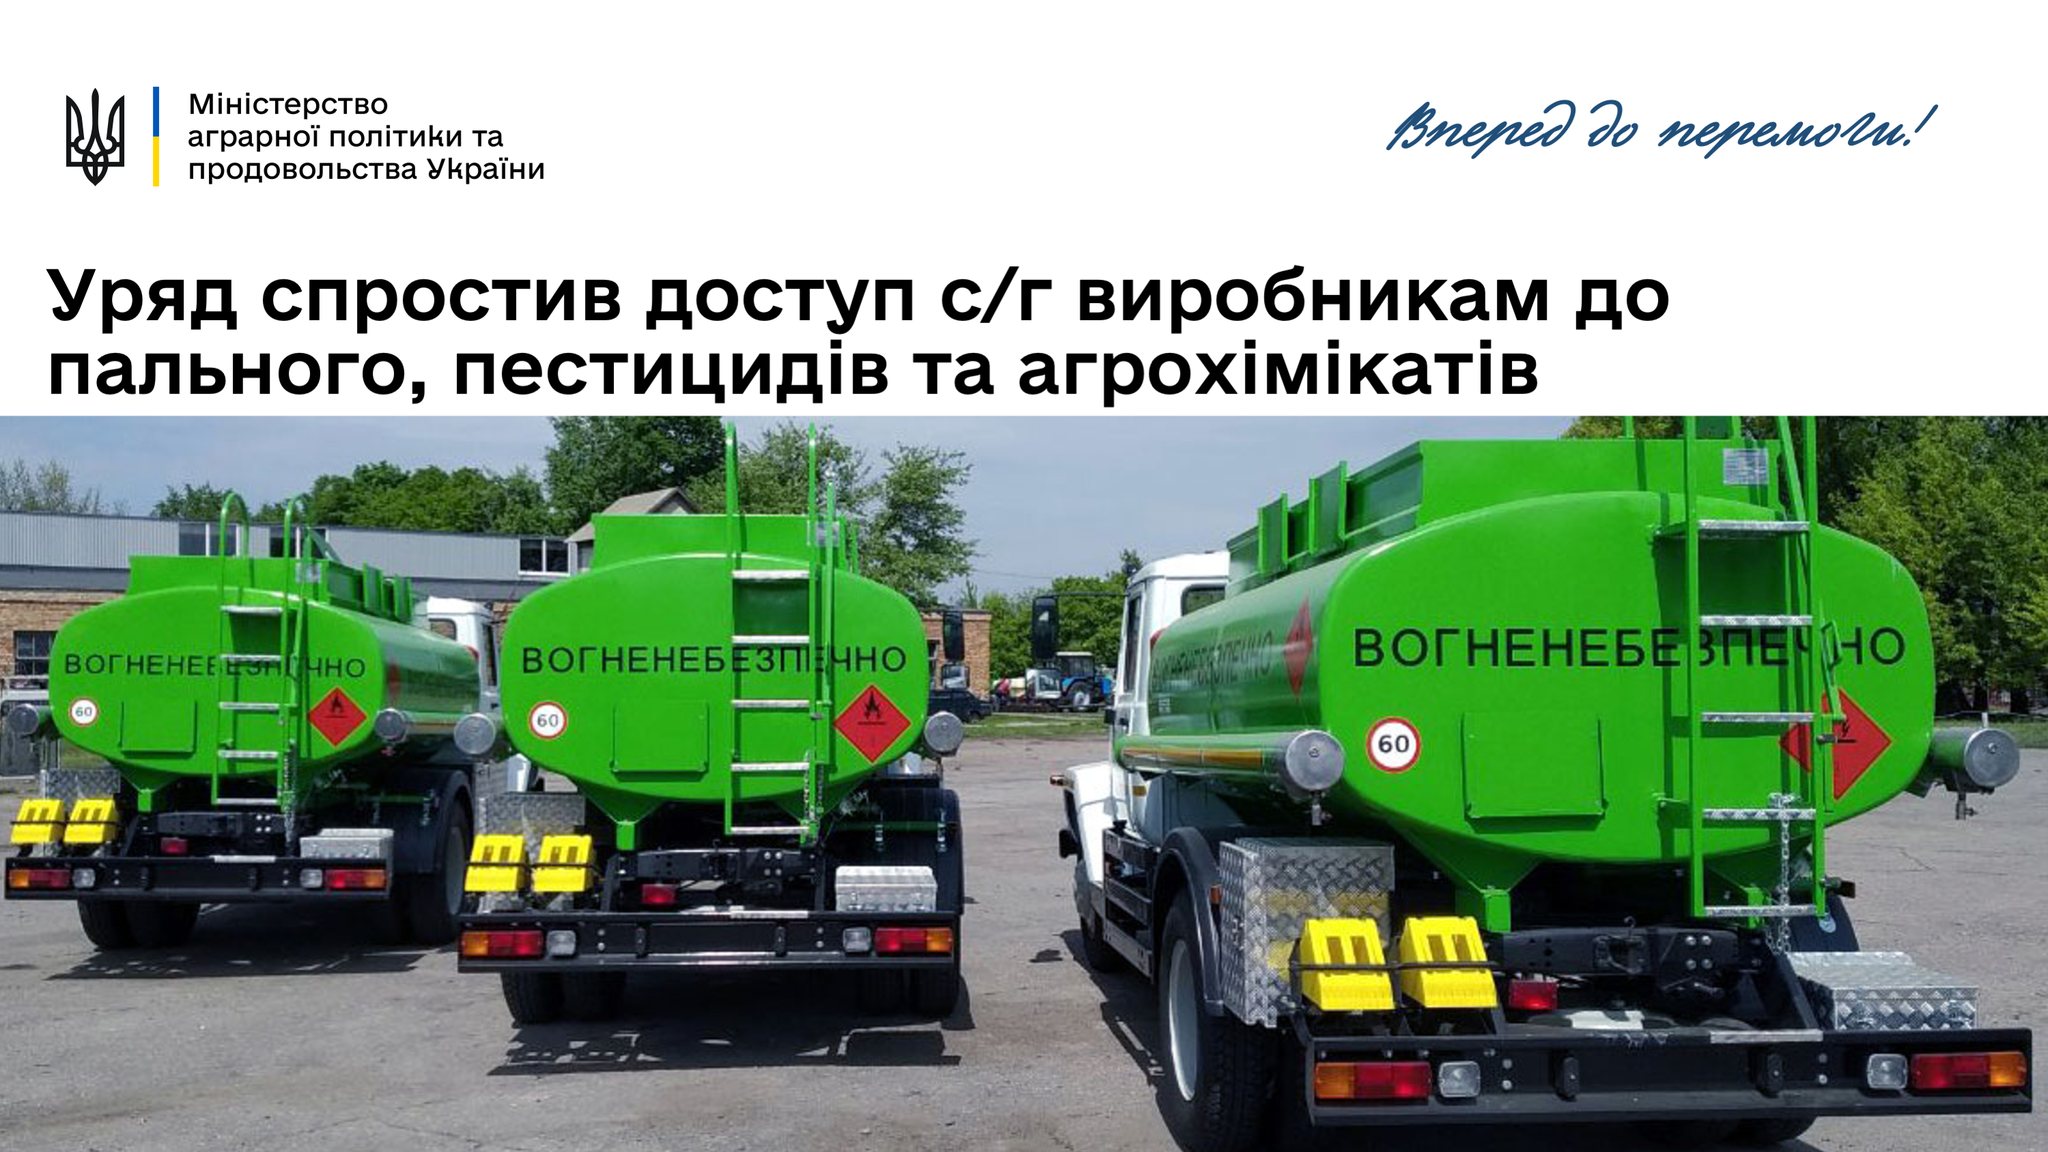 Уряд спростив доступ с/г виробникам до пального, пестицидів та агрохімікатів, – Роман Лещенко